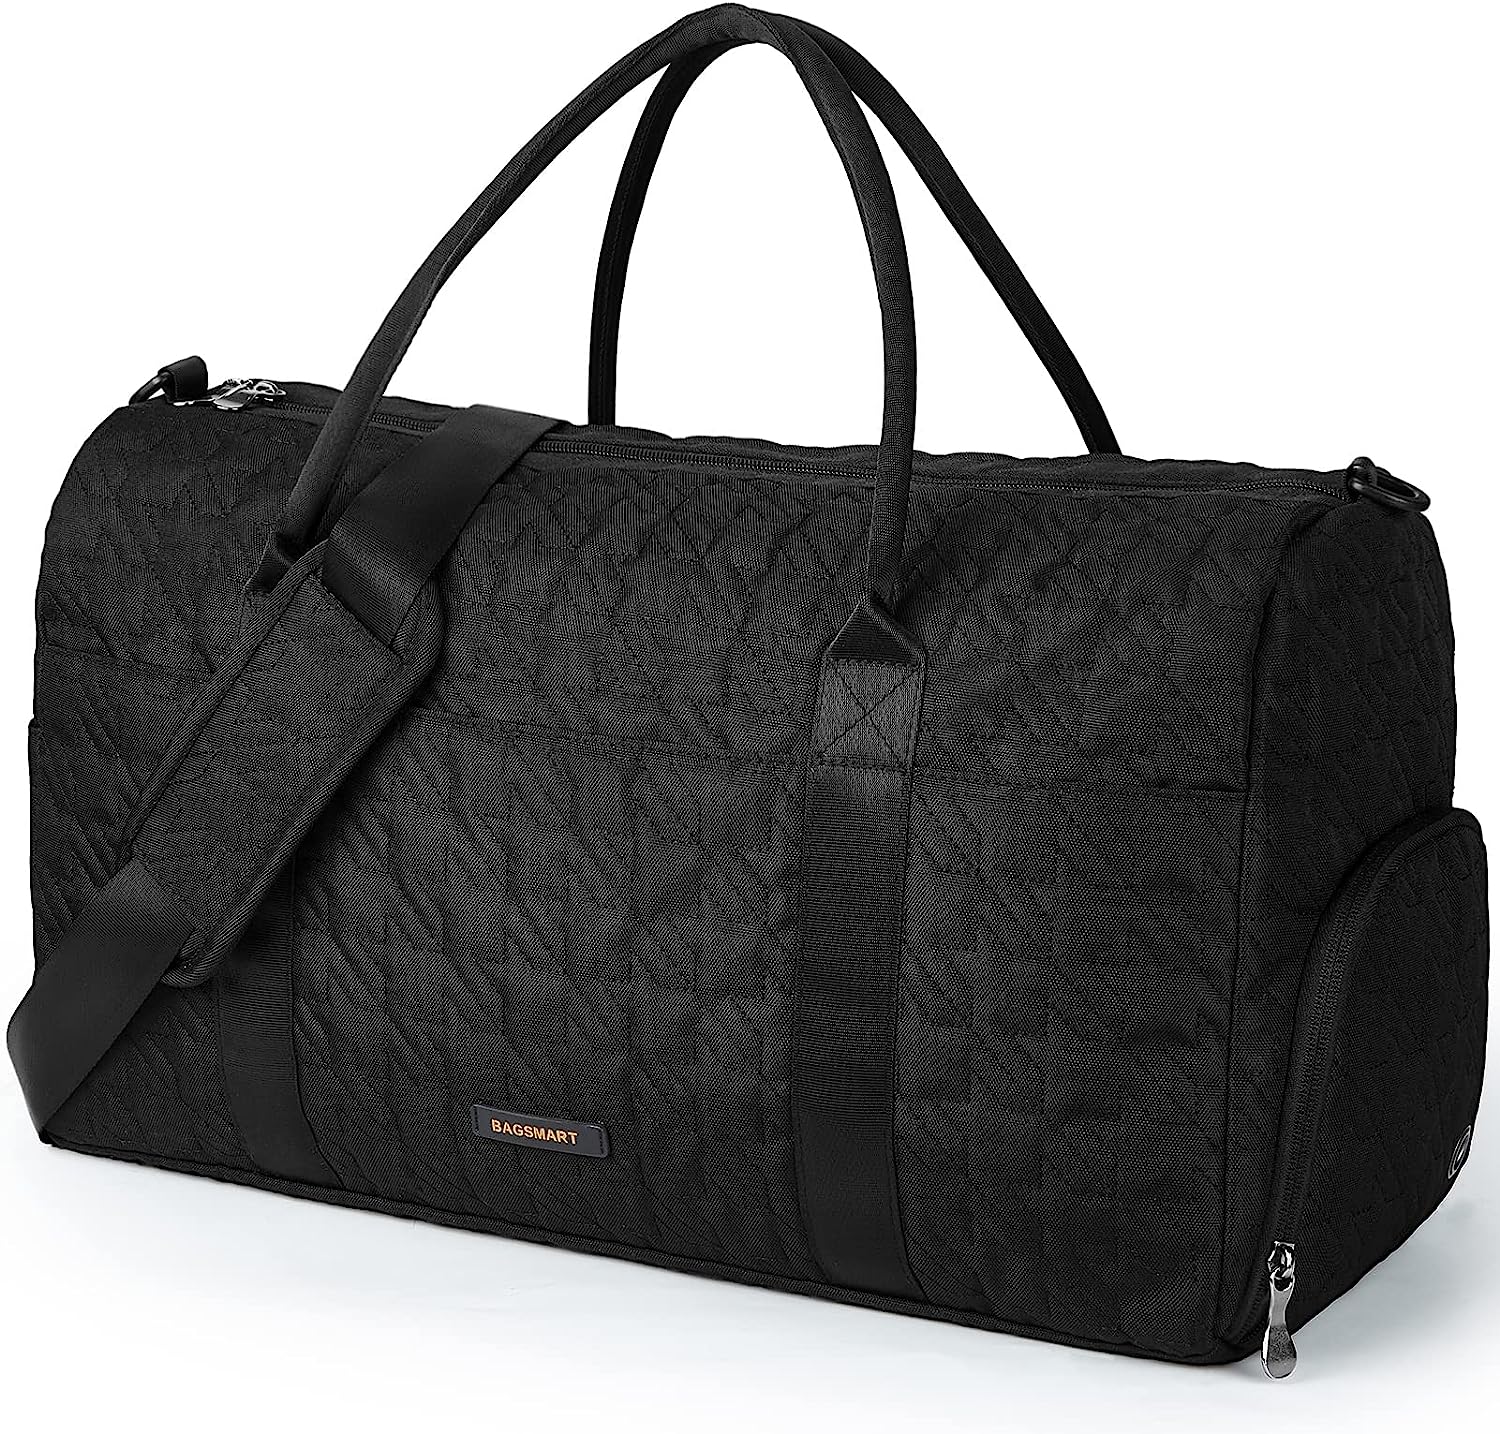 Travel Bag, BAGSMART 50L Large Duffle Bag for Men [...]